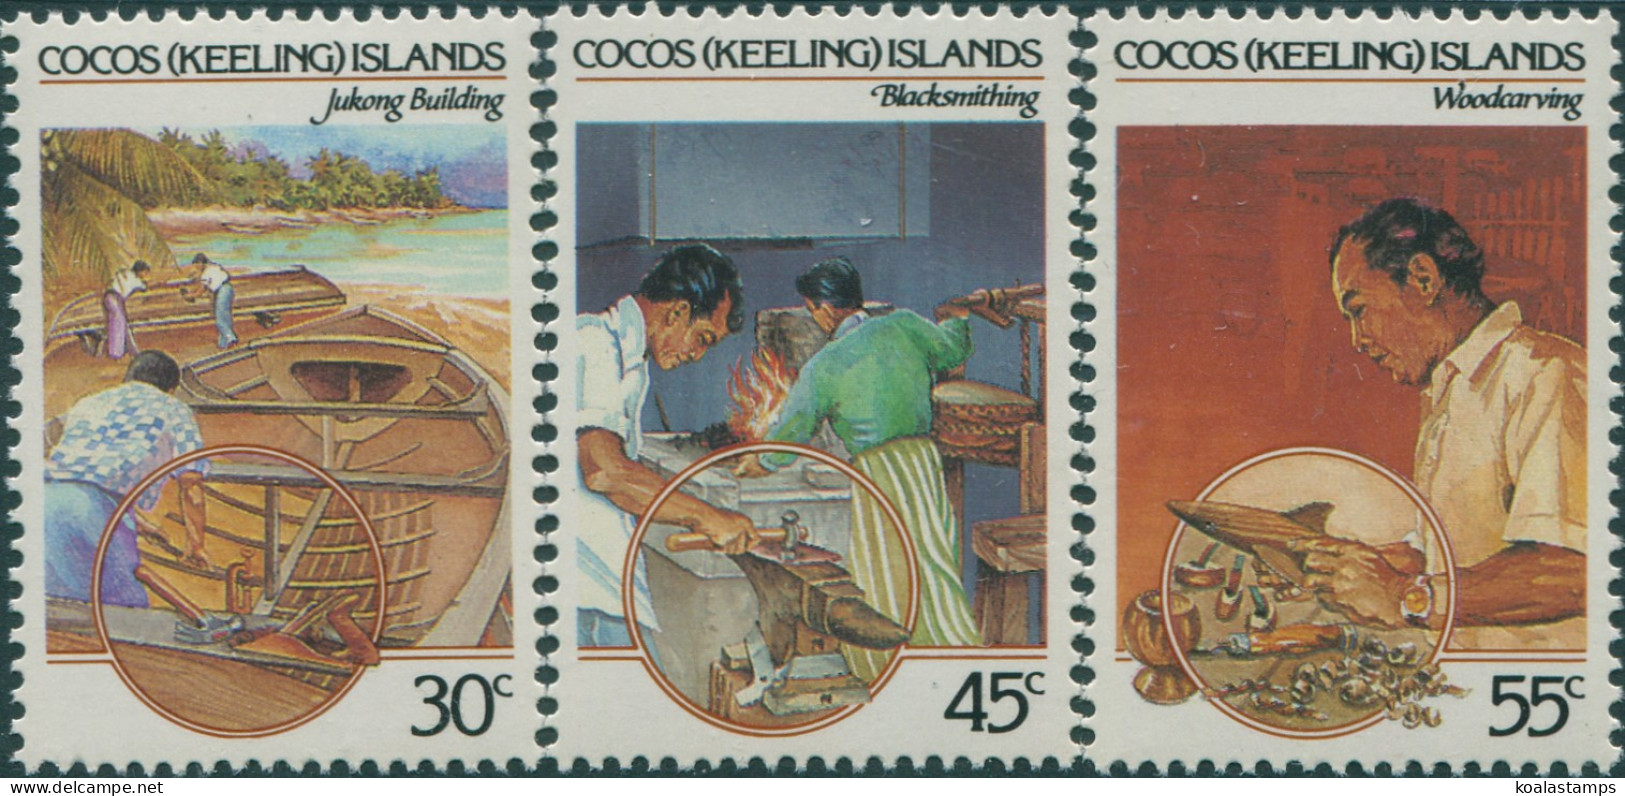 Cocos Islands 1985 SG126-128 Malay Culture Set MNH - Islas Cocos (Keeling)